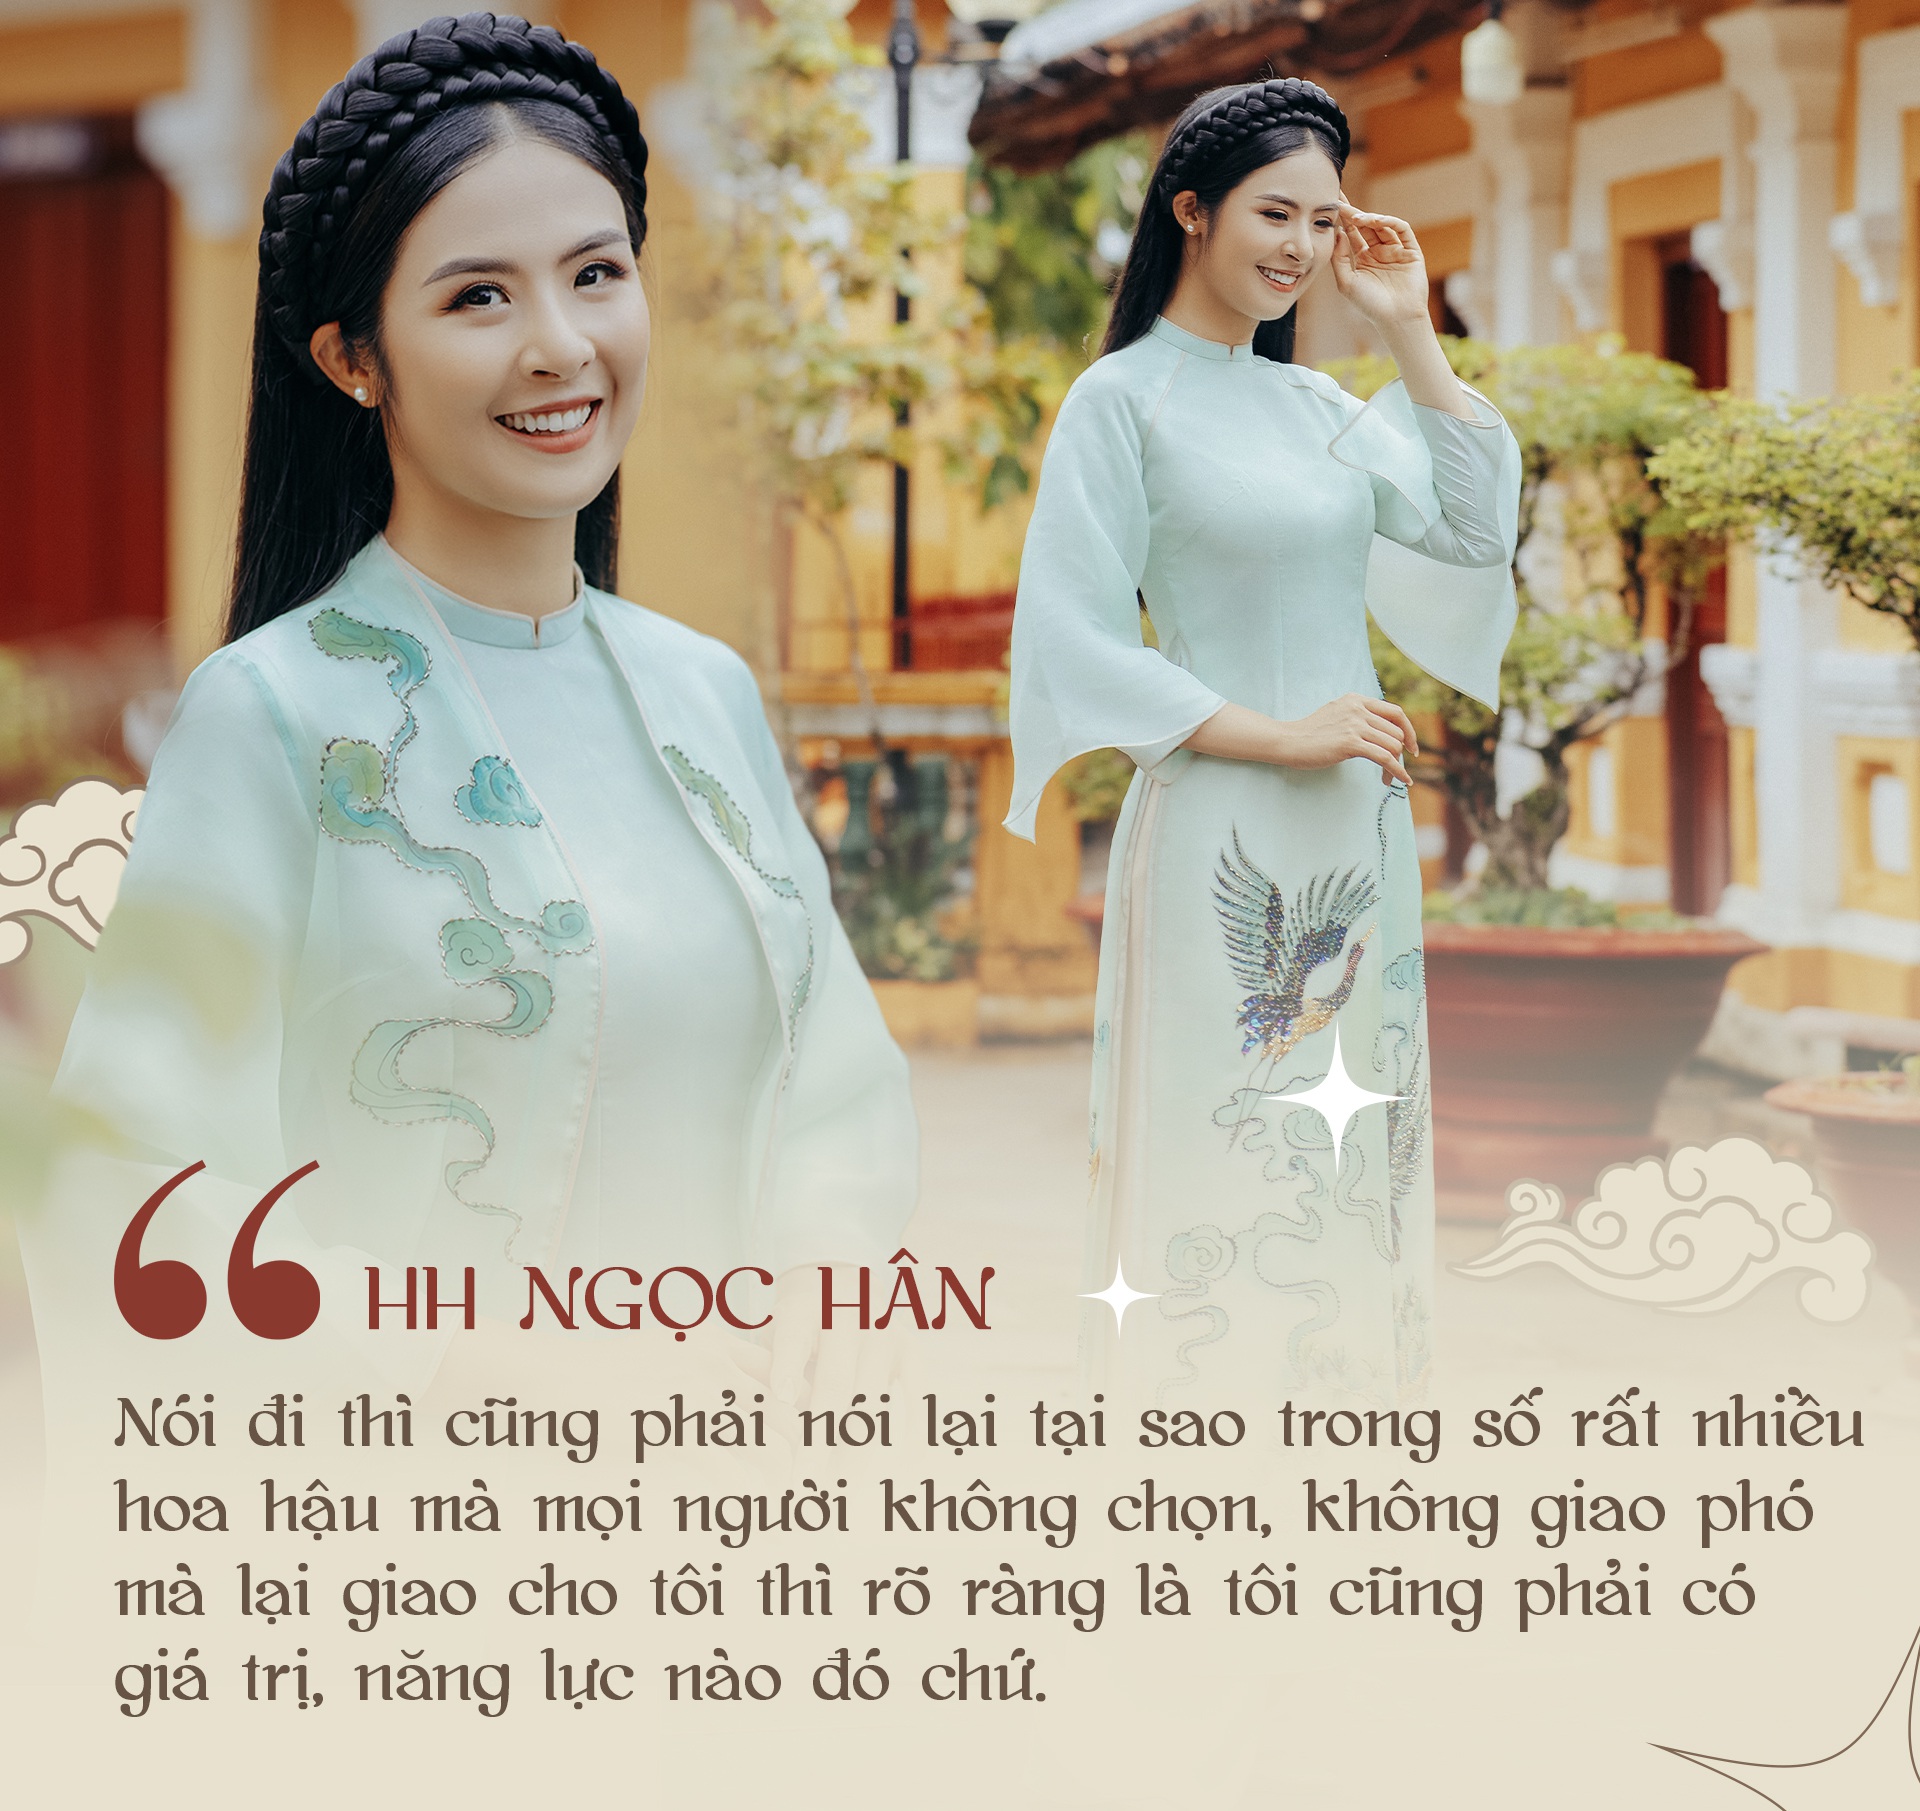 Hoa hậu Ngọc Hân kể chuyện đi &quot;làm thuê&quot;, lần đầu hé lộ về &quot;độ giàu có&quot; - Ảnh 15.